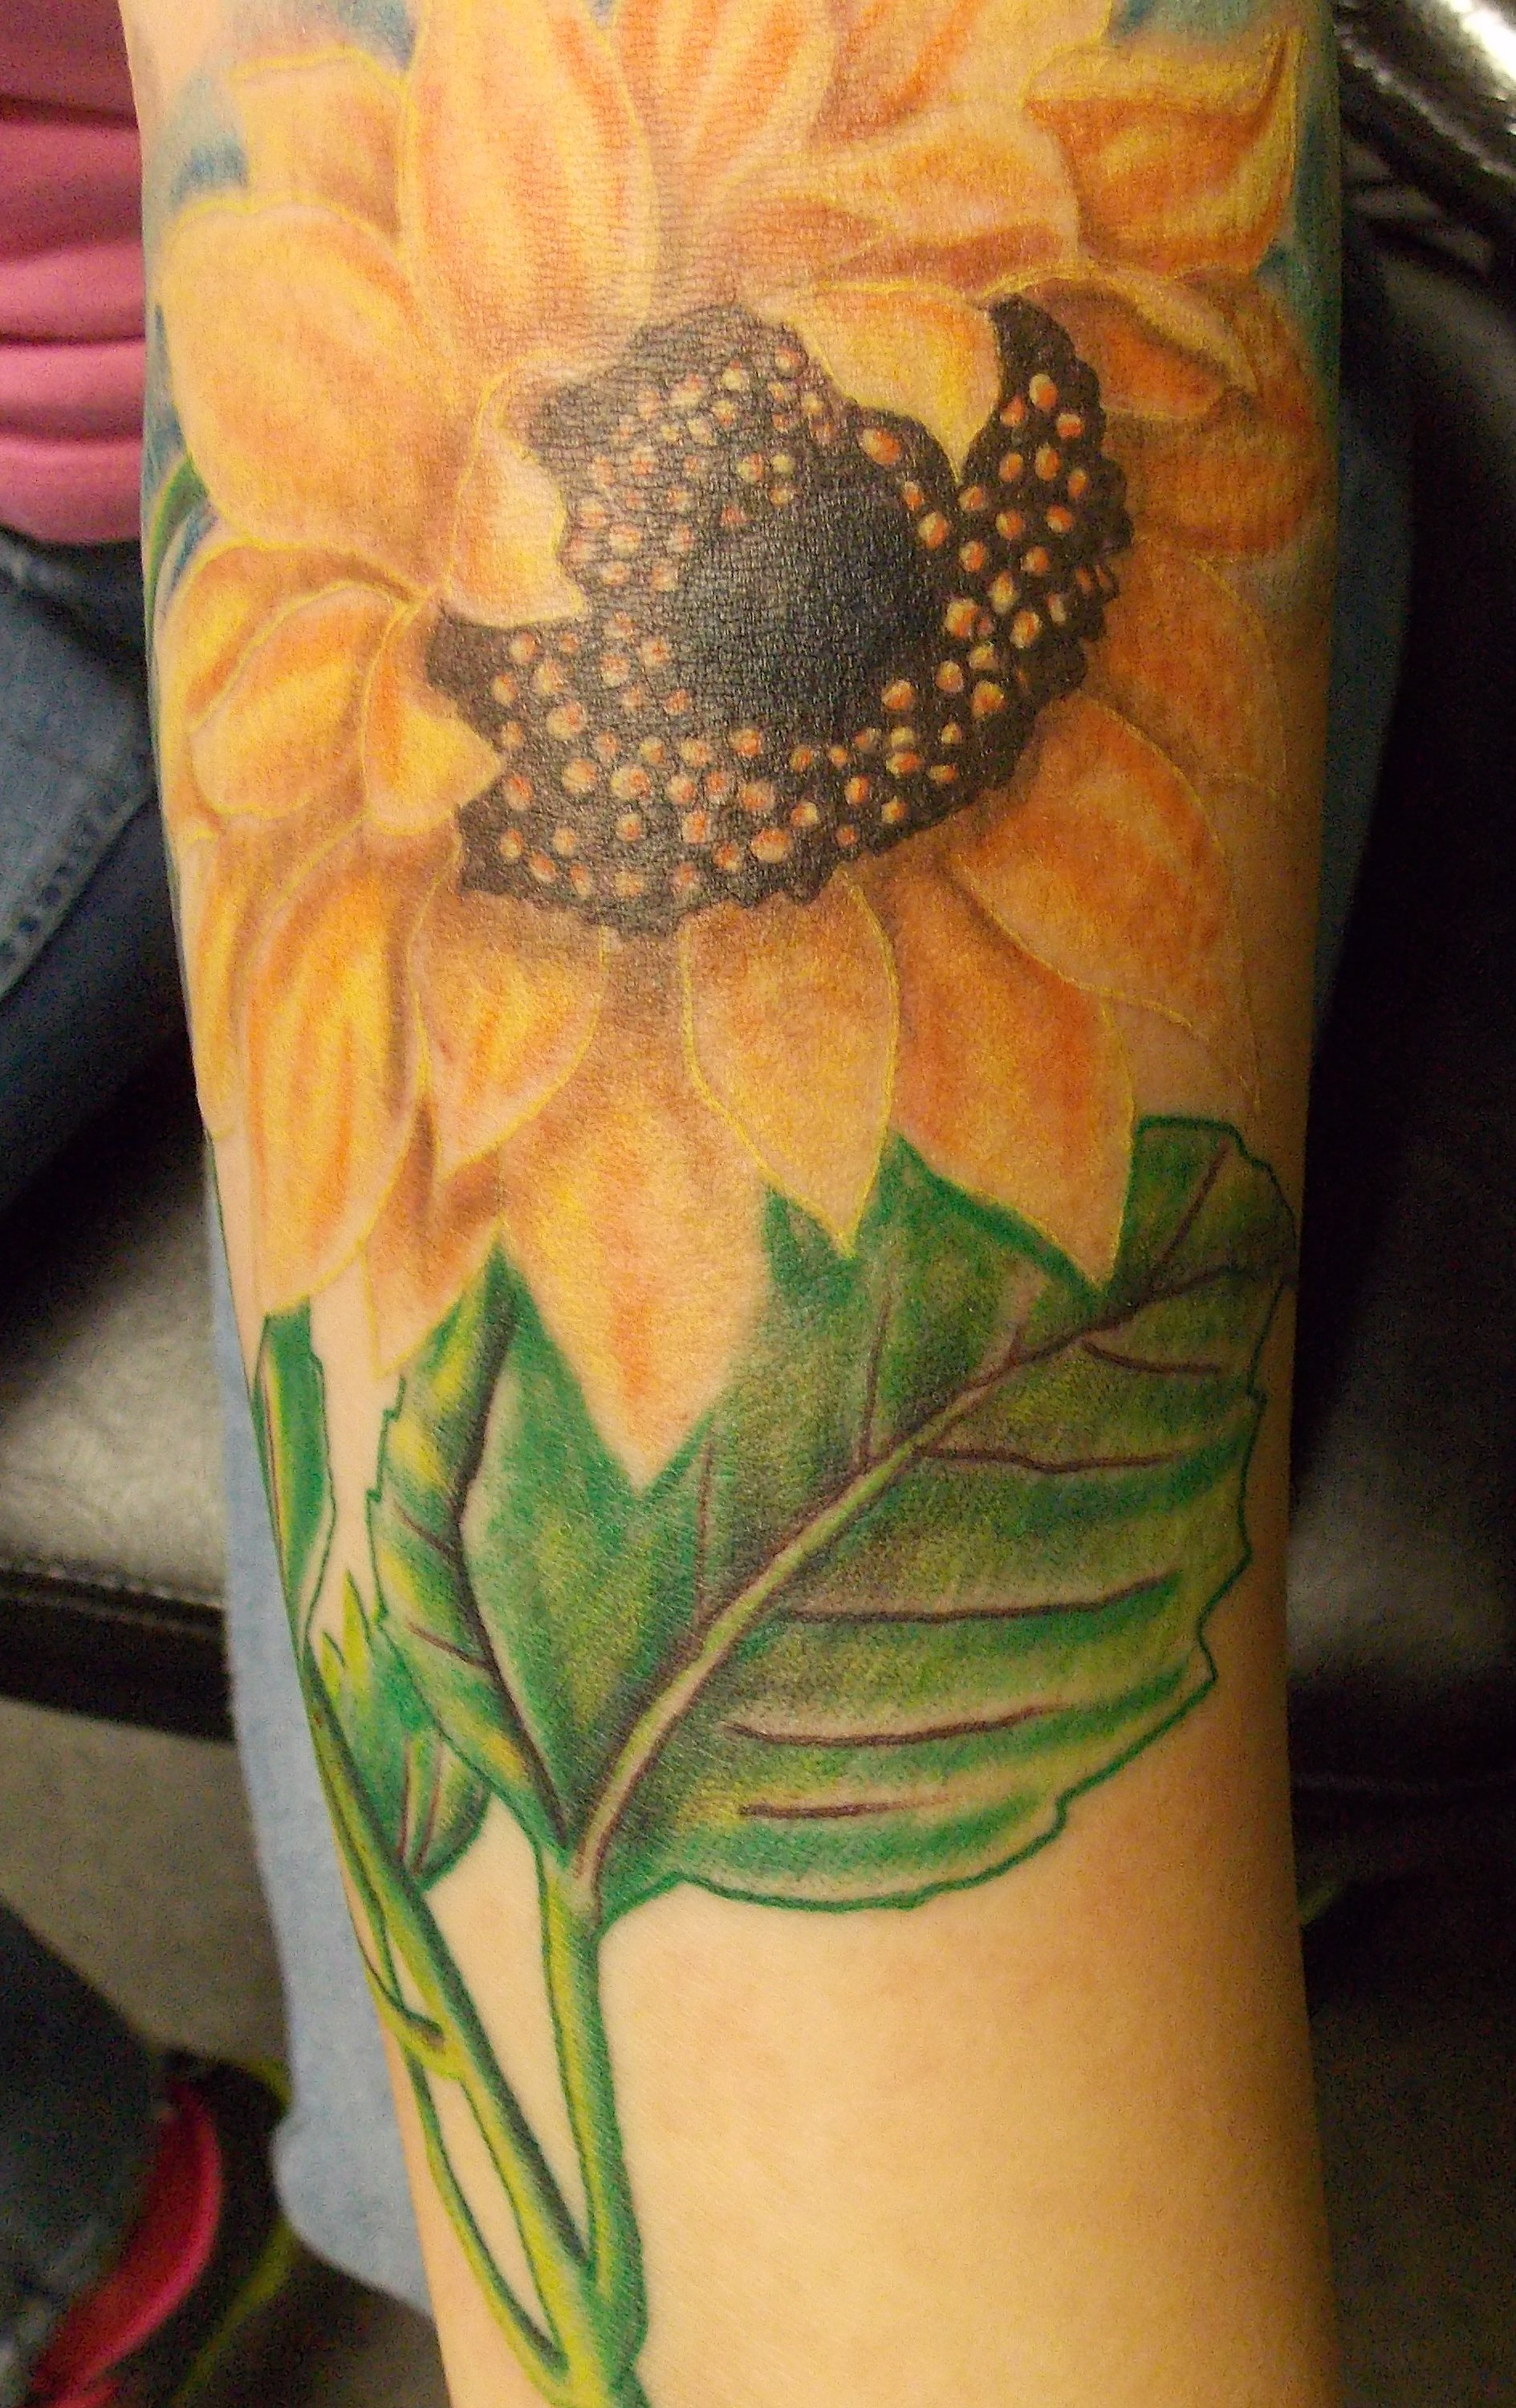 Back tattoo flowers butterfly hummingbird sunflower Gerber daisy  Sunflower  tattoo shoulder Sunflower tattoo thigh Flower tattoo back